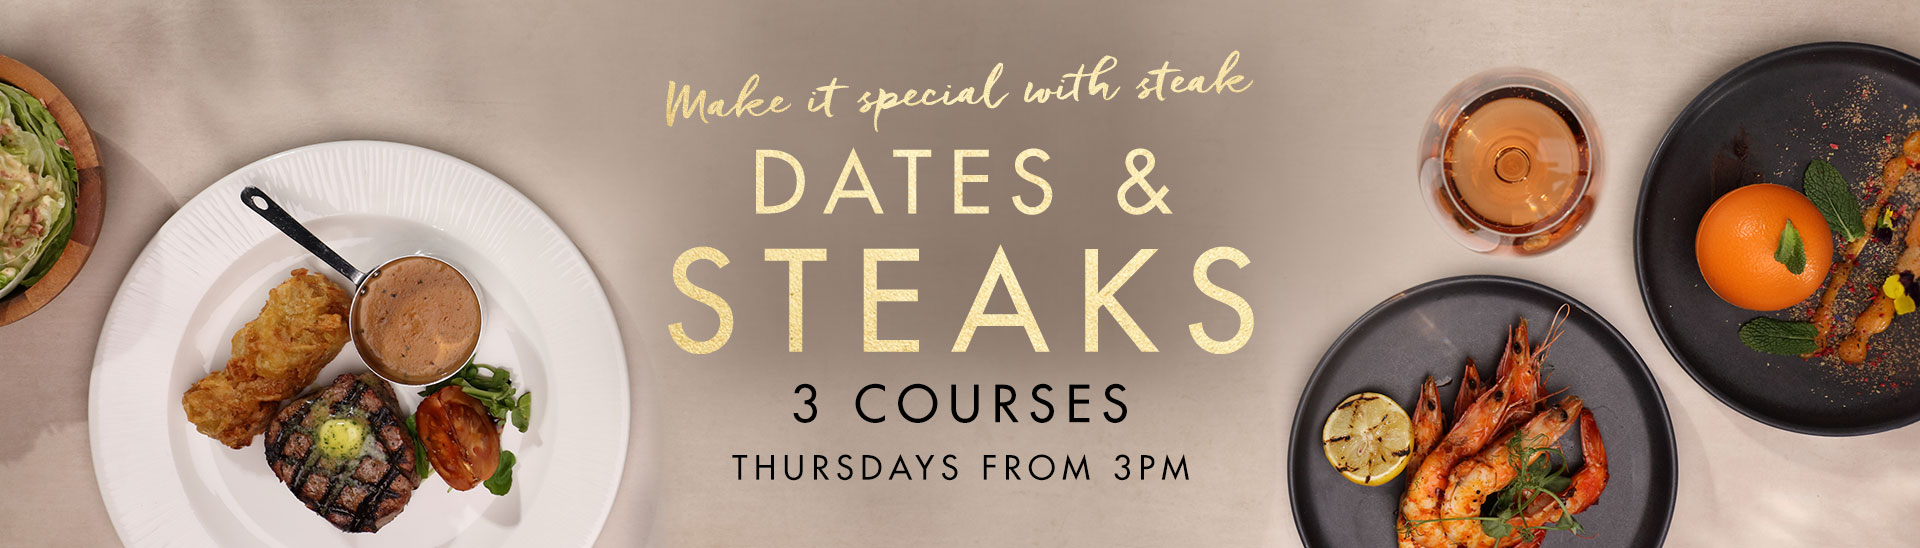 Dates & Steaks at Miller & Carter St Albans